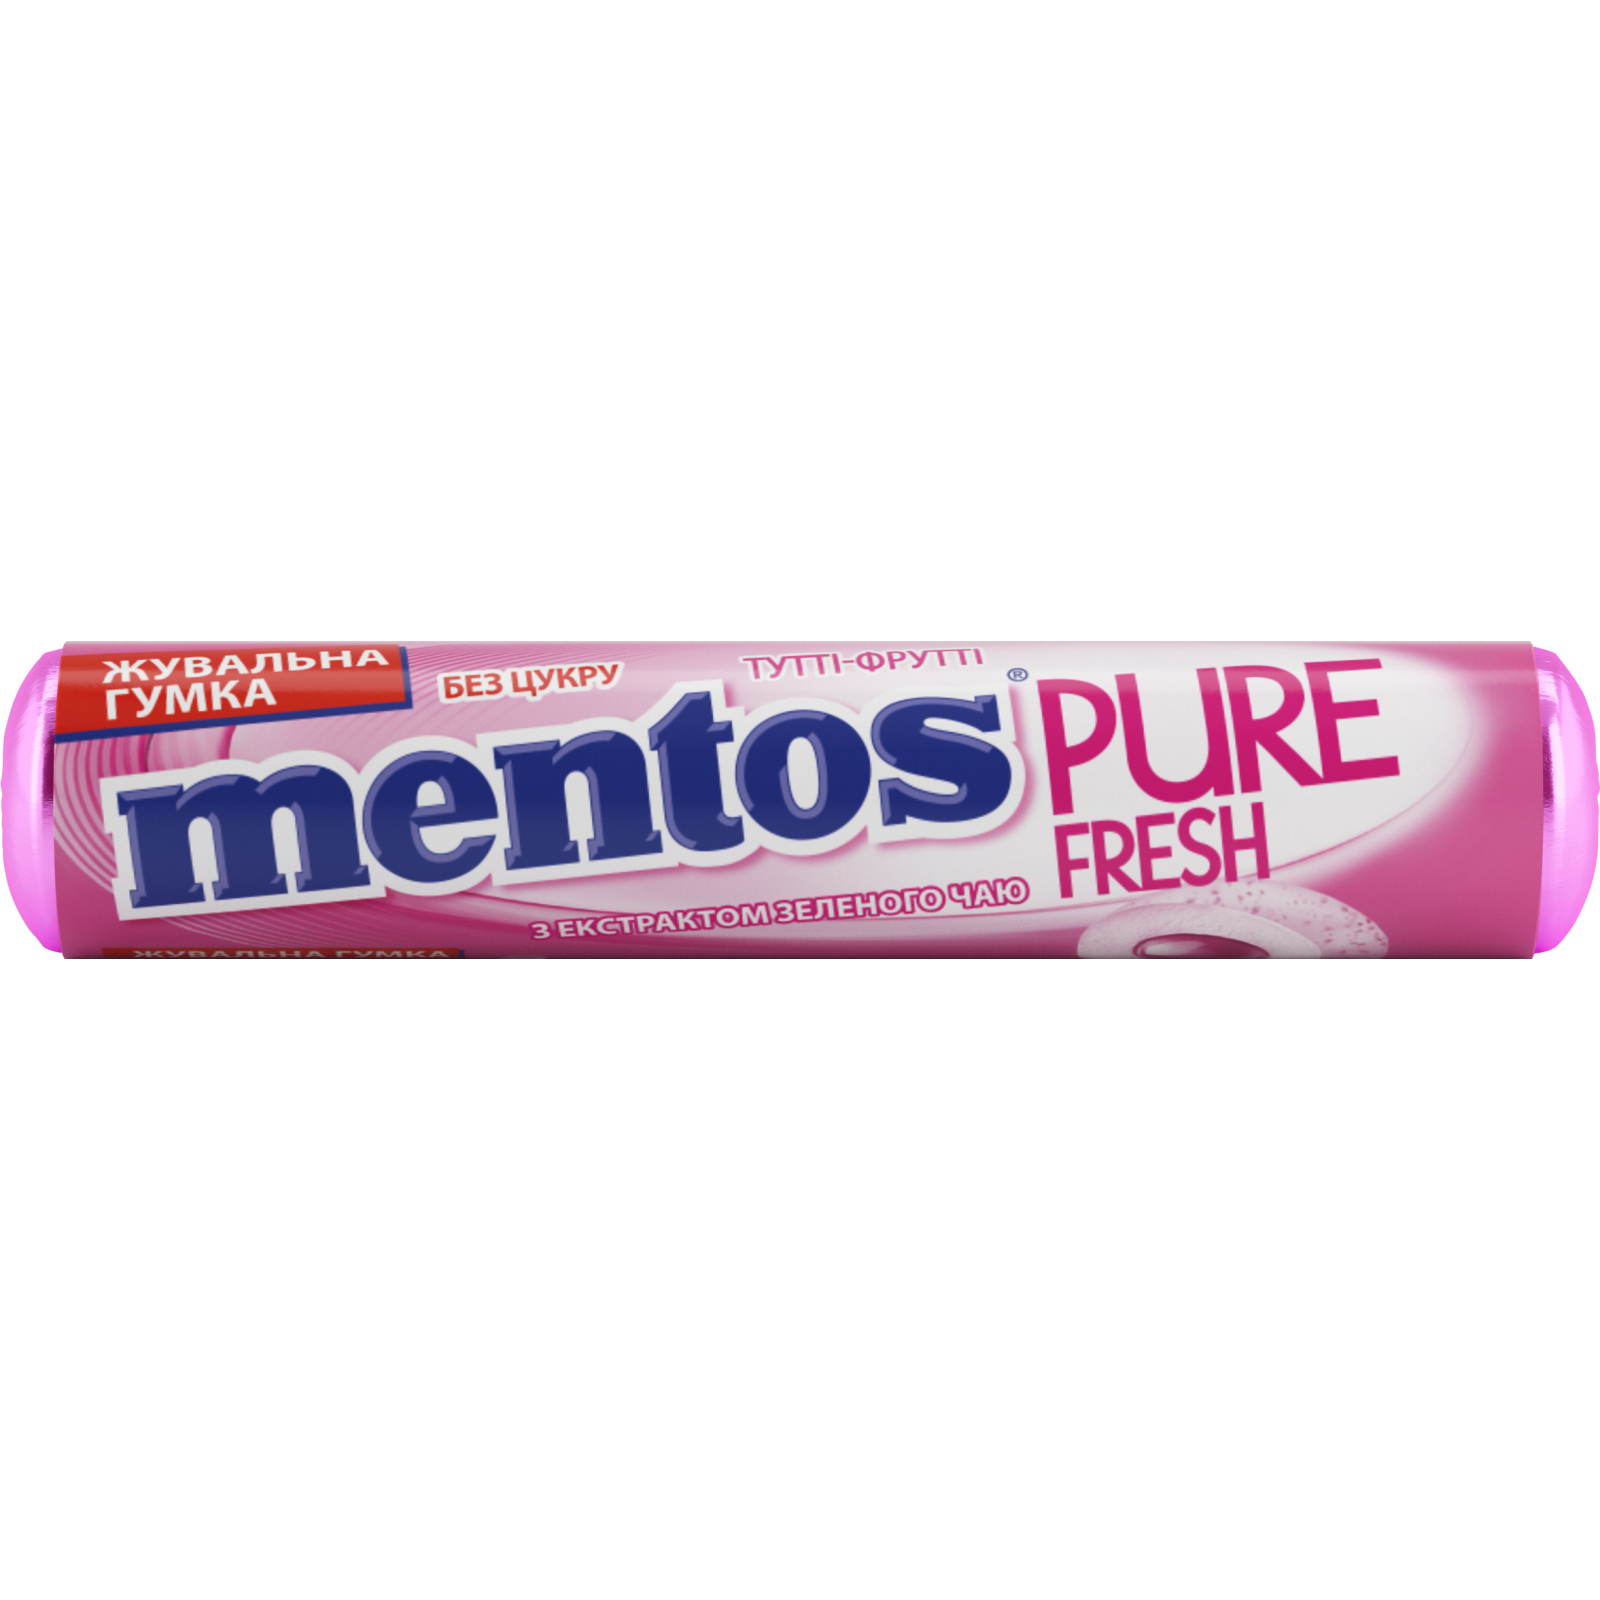 Жевательная резинка Mentos Pure Fresh со вкусом Тутти-Фрутти 15.57 г (8935001725404)